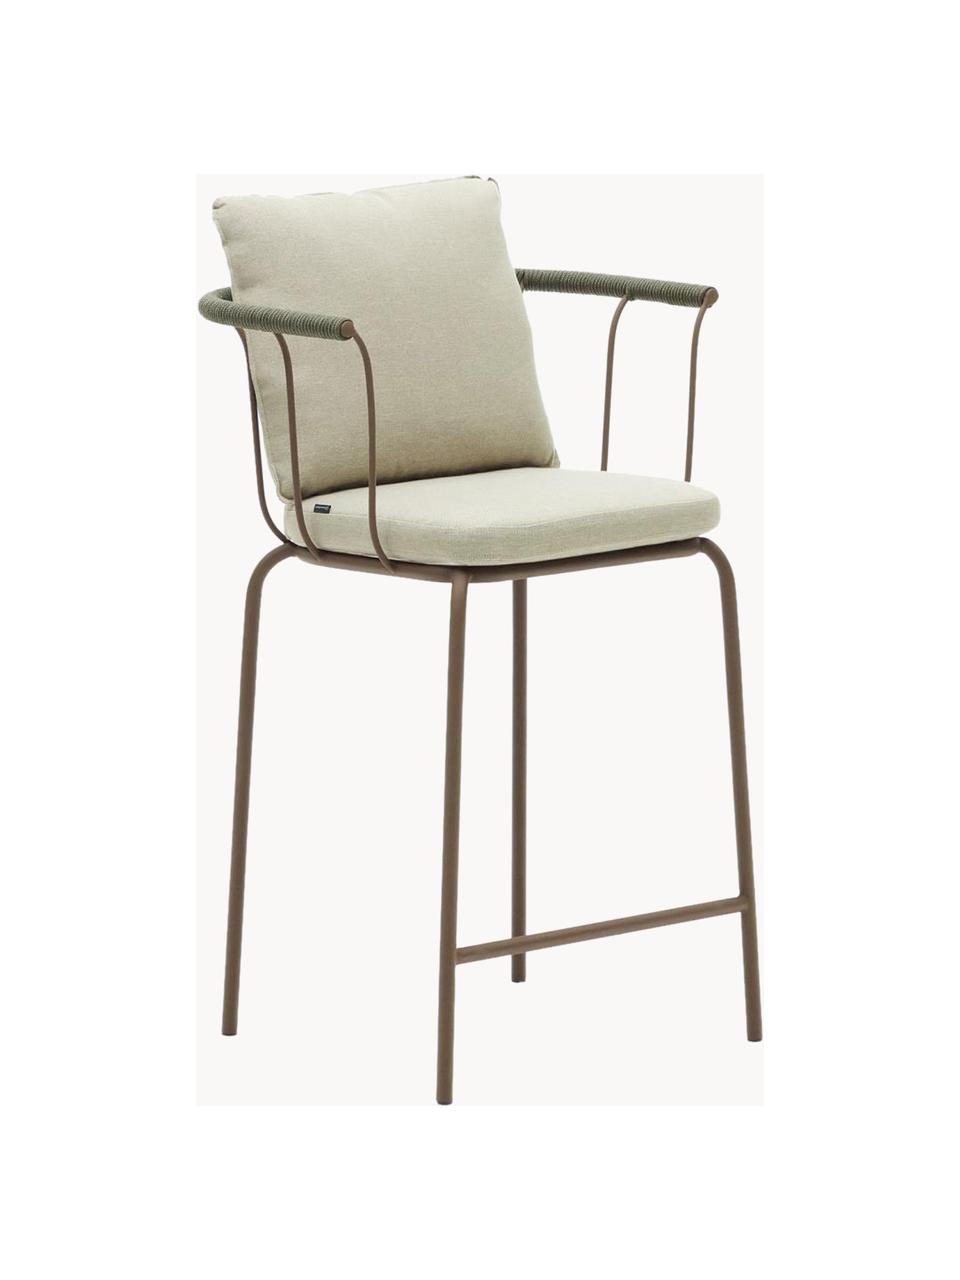 Ogrodowe krzesło barowe z tapicerowanym siedziskiem Jay, Tapicerka: 100% poliester, Stelaż: metal malowany proszkowo, Jasnobeżowa tkanina, greige, S 59 x G 53 cm